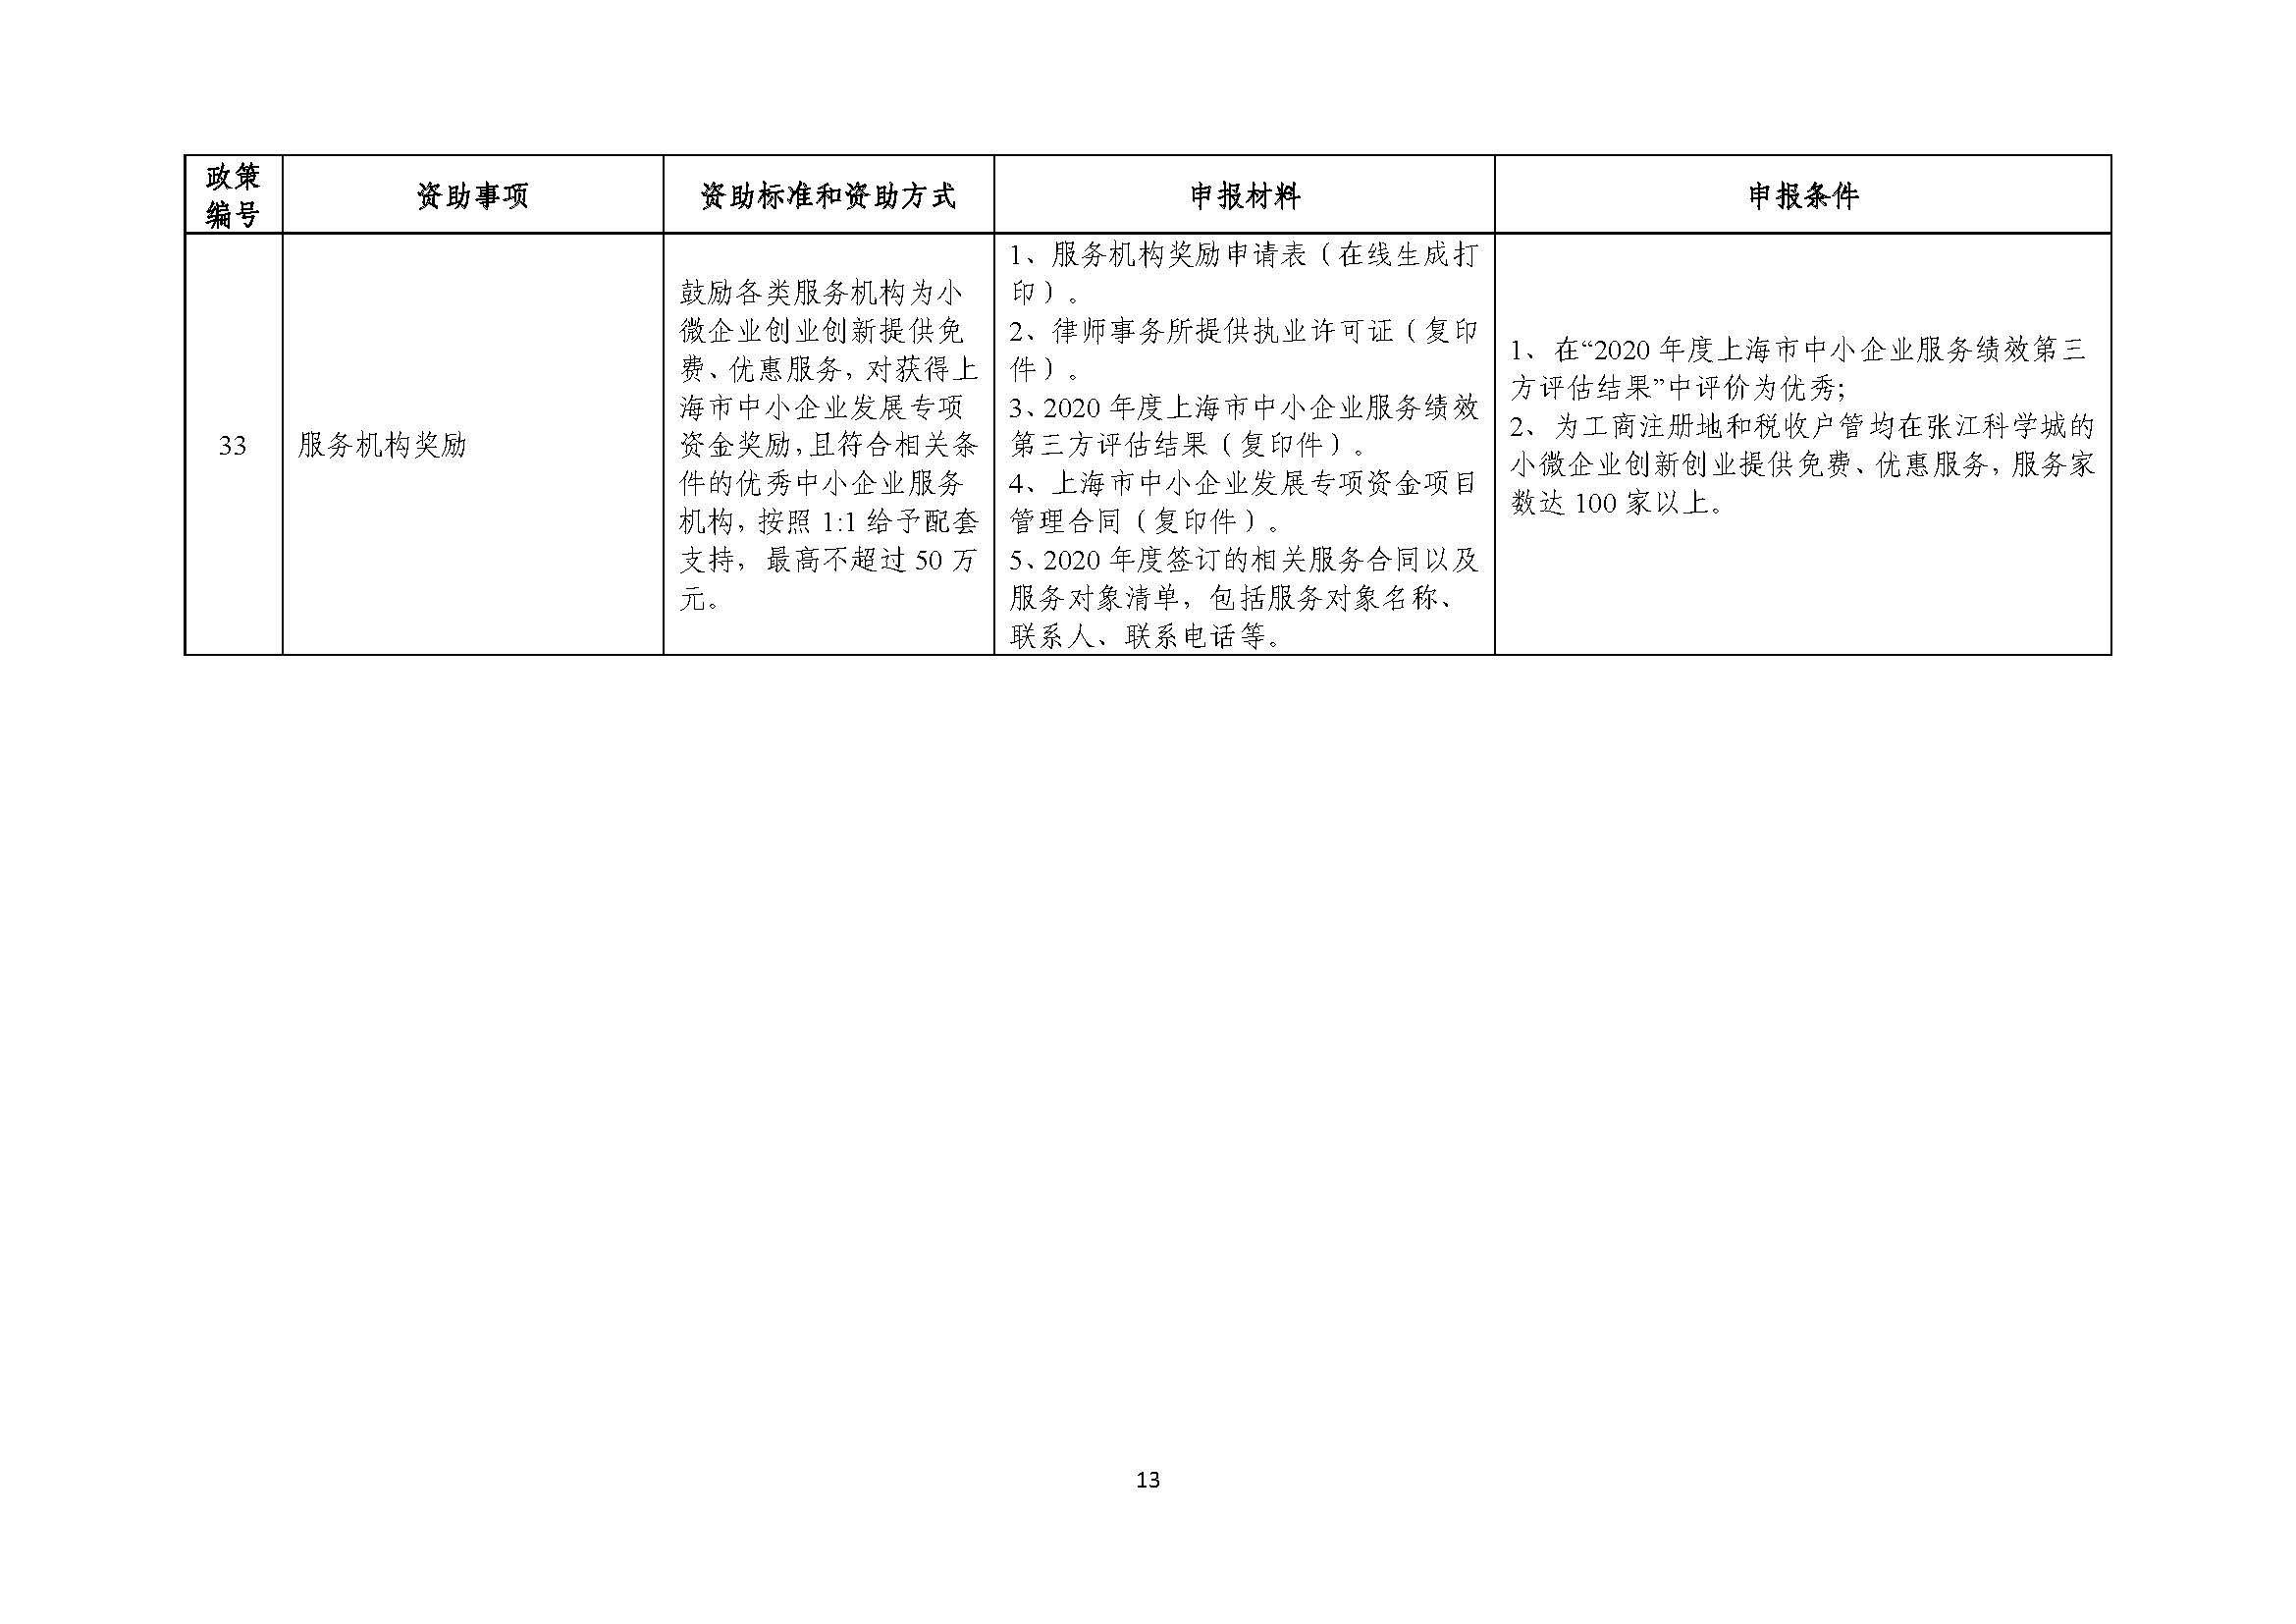 2021年张江科学城专项政策申报指南_页面_13.jpg